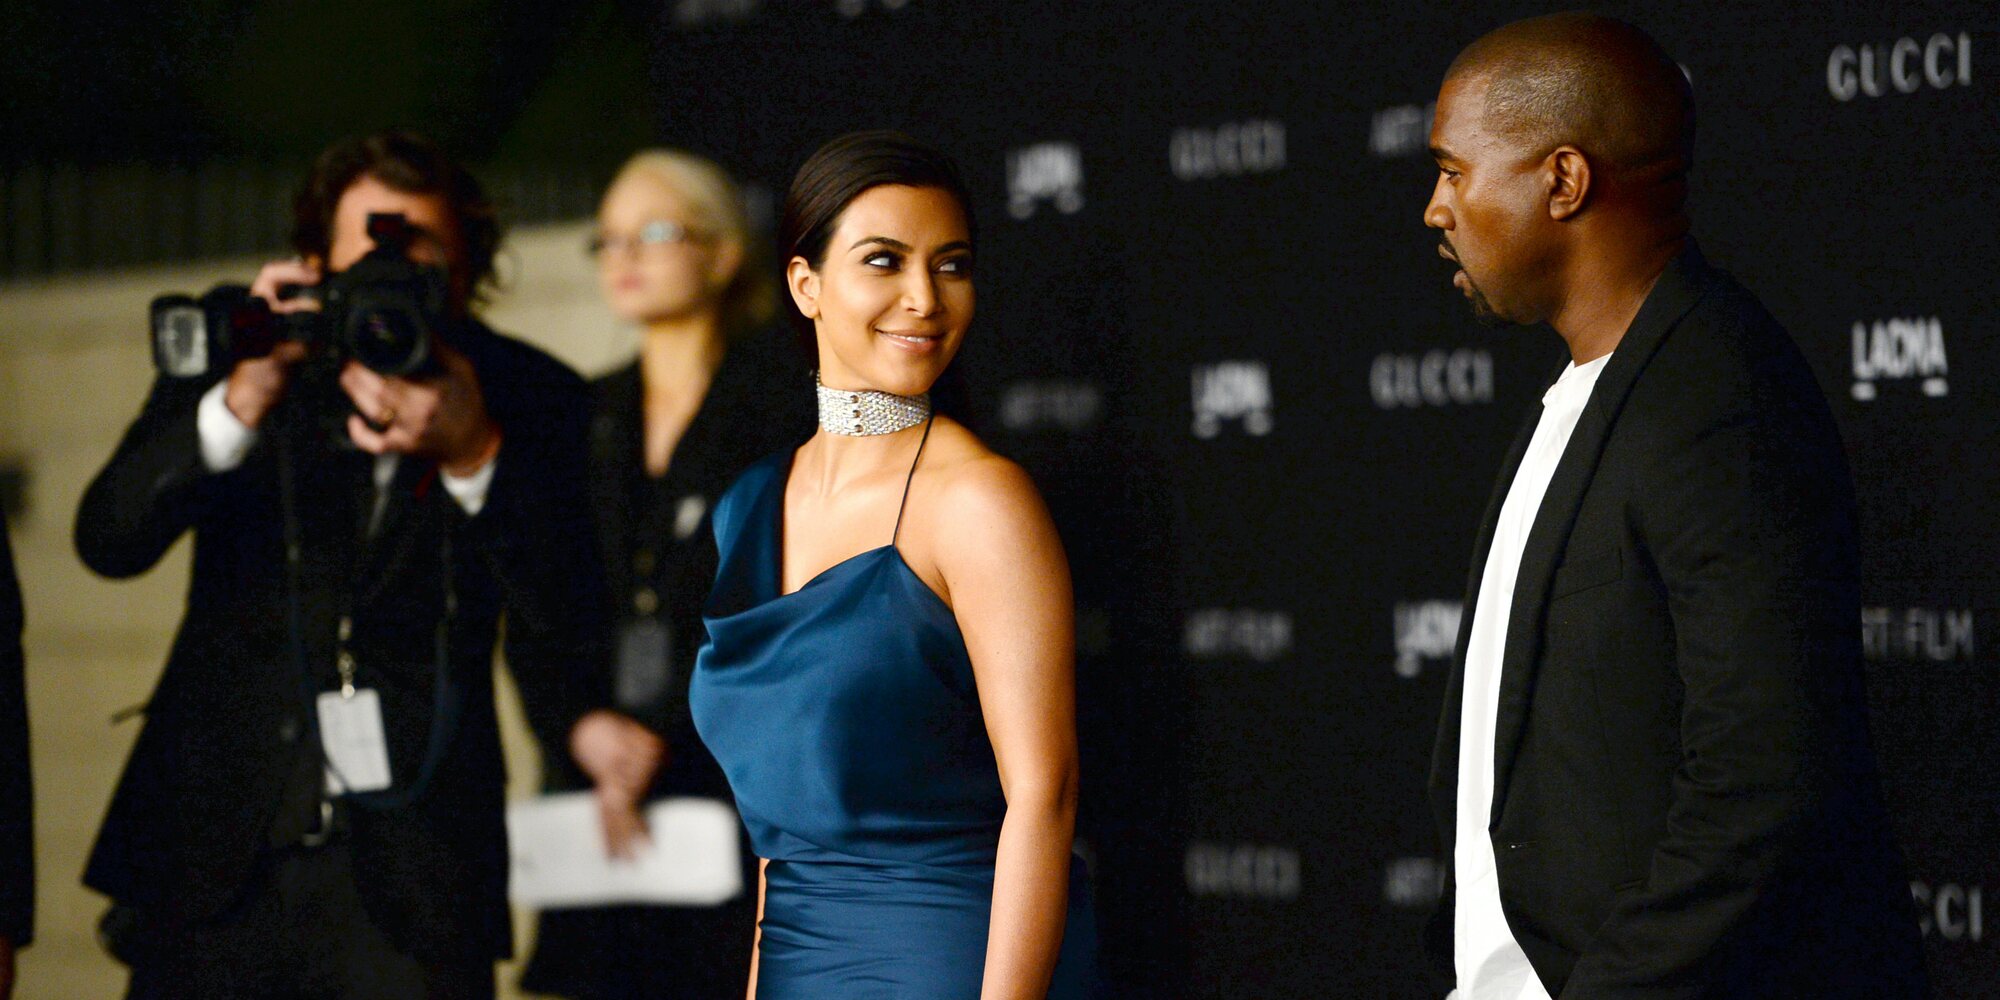 Adidas abre una investigación a Kanye West por supuestamente enseñar fotos íntimas de Kim Kardashian a los empleados